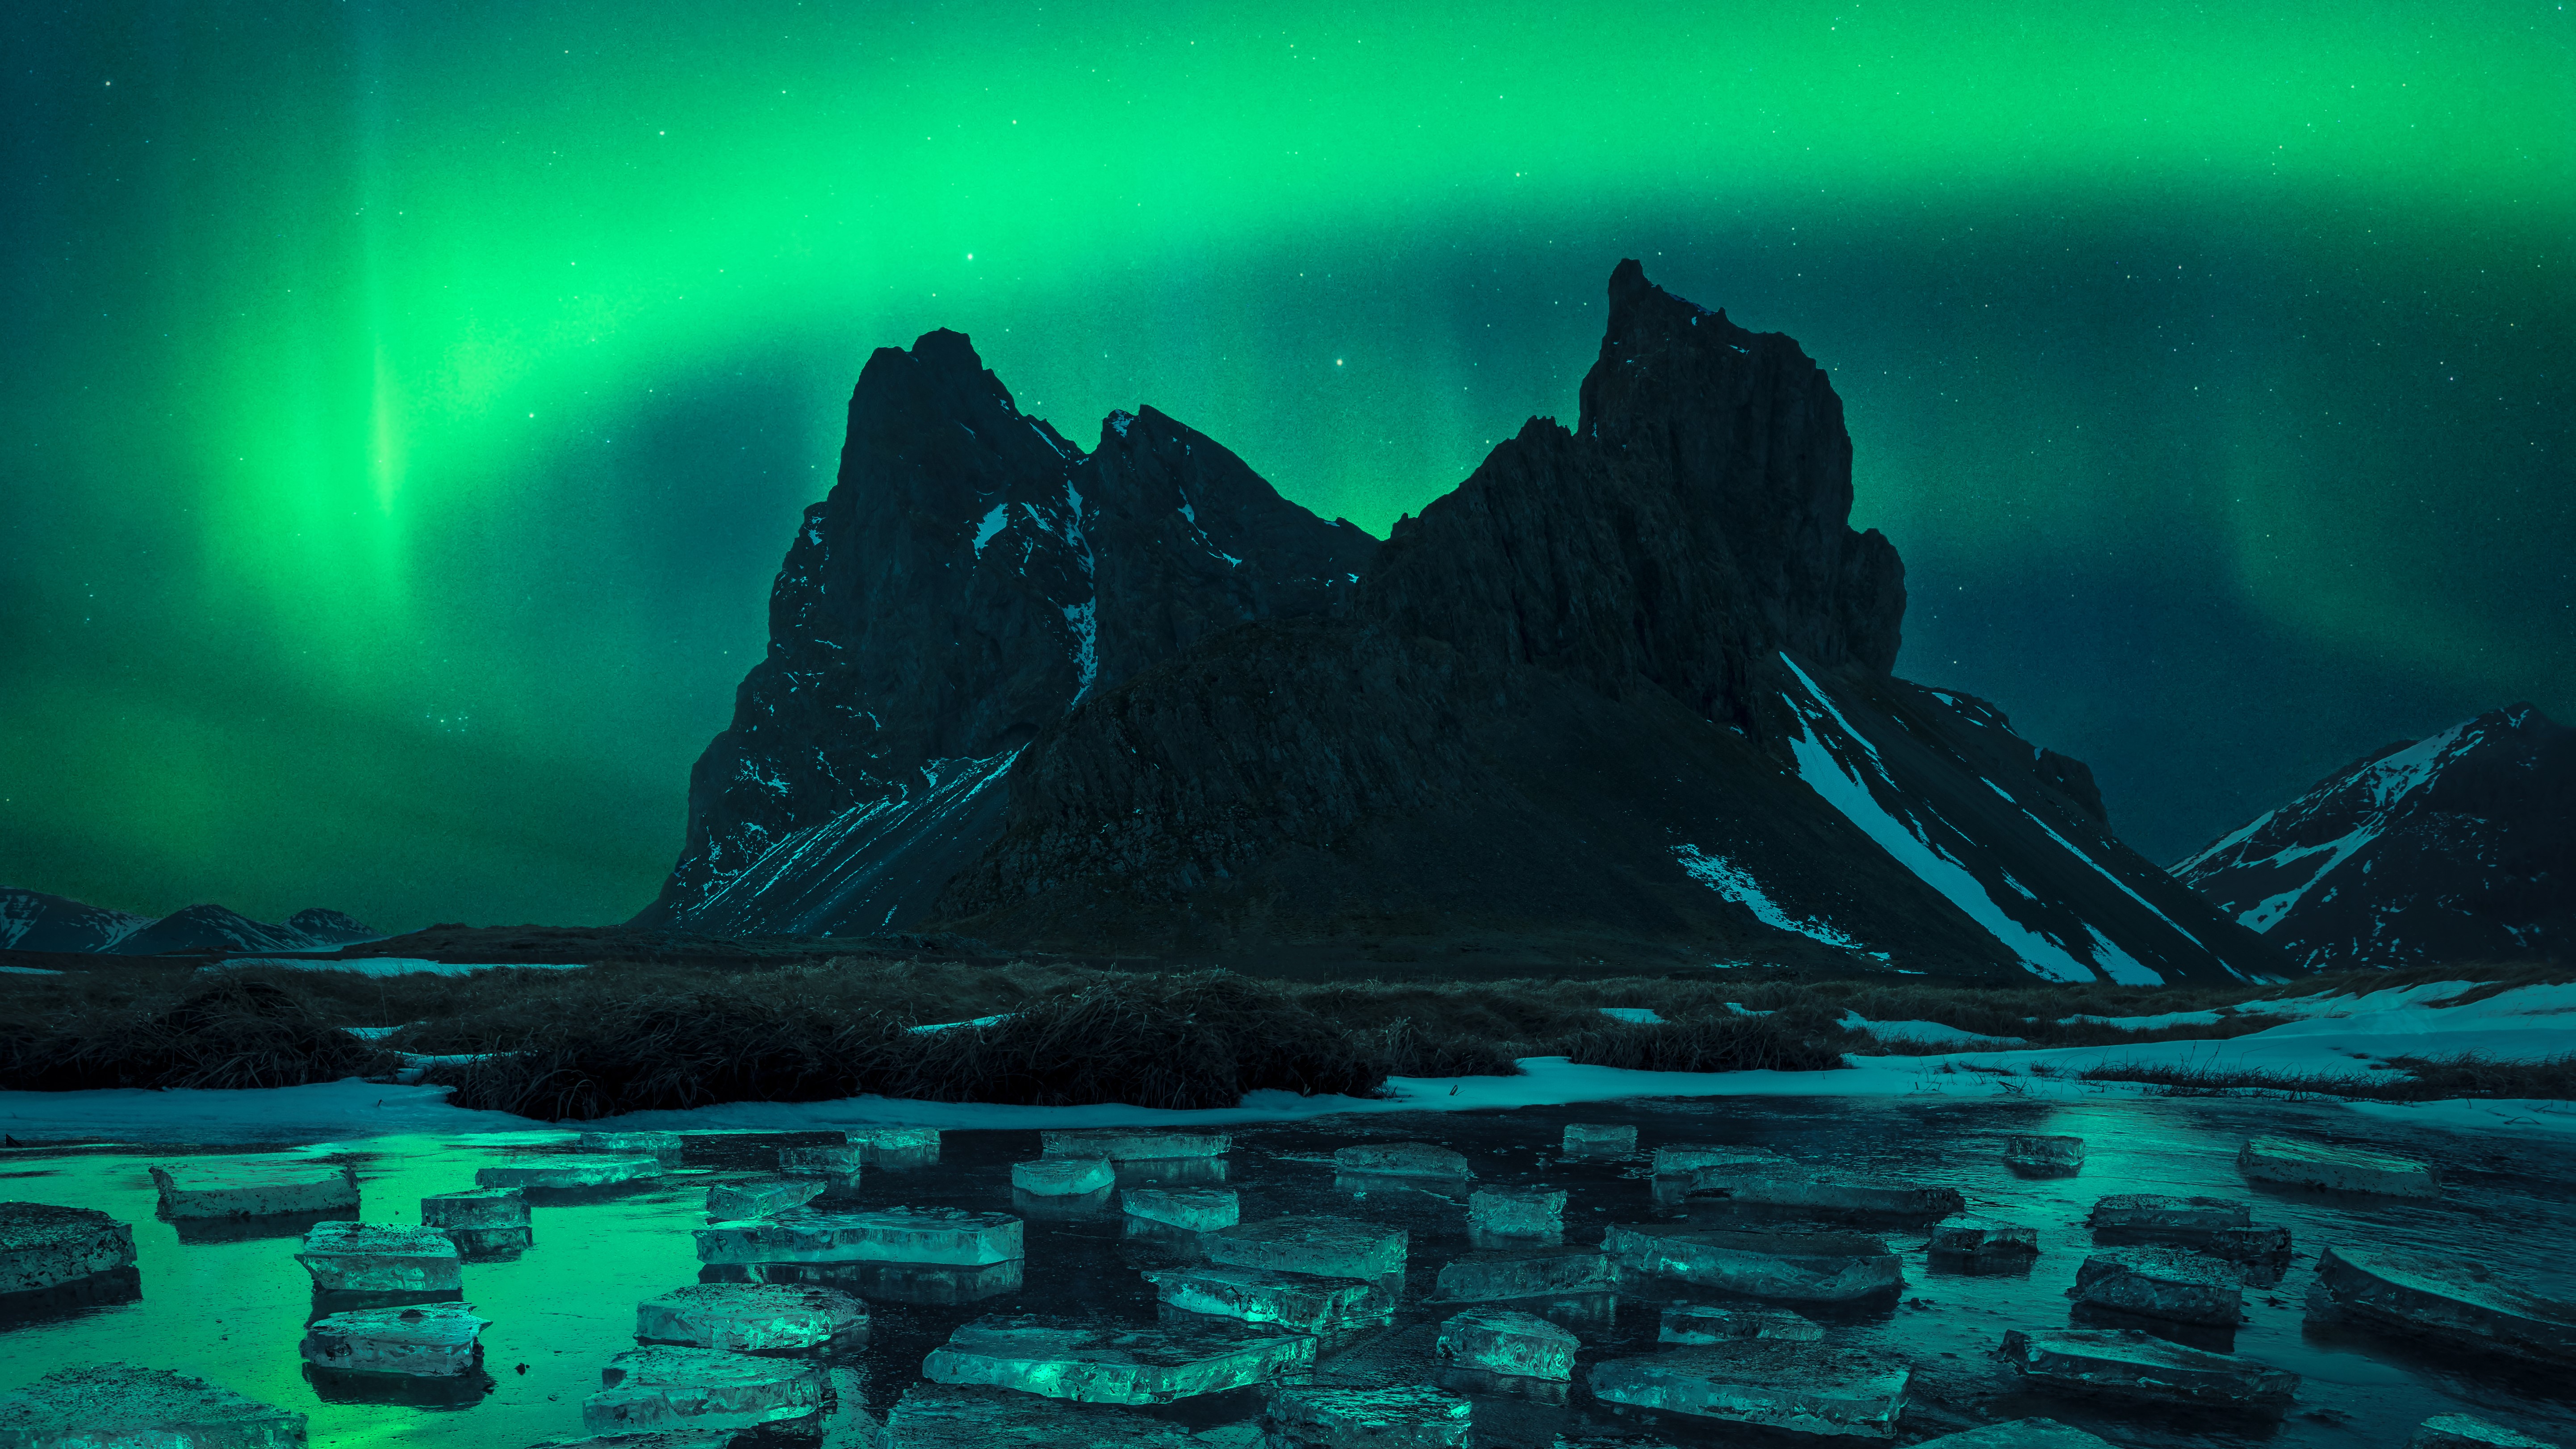 L'aurore brille en vert au-dessus d'un lac recouvert de glace dans la photographie gagnante dans la catégorie Aurorae.